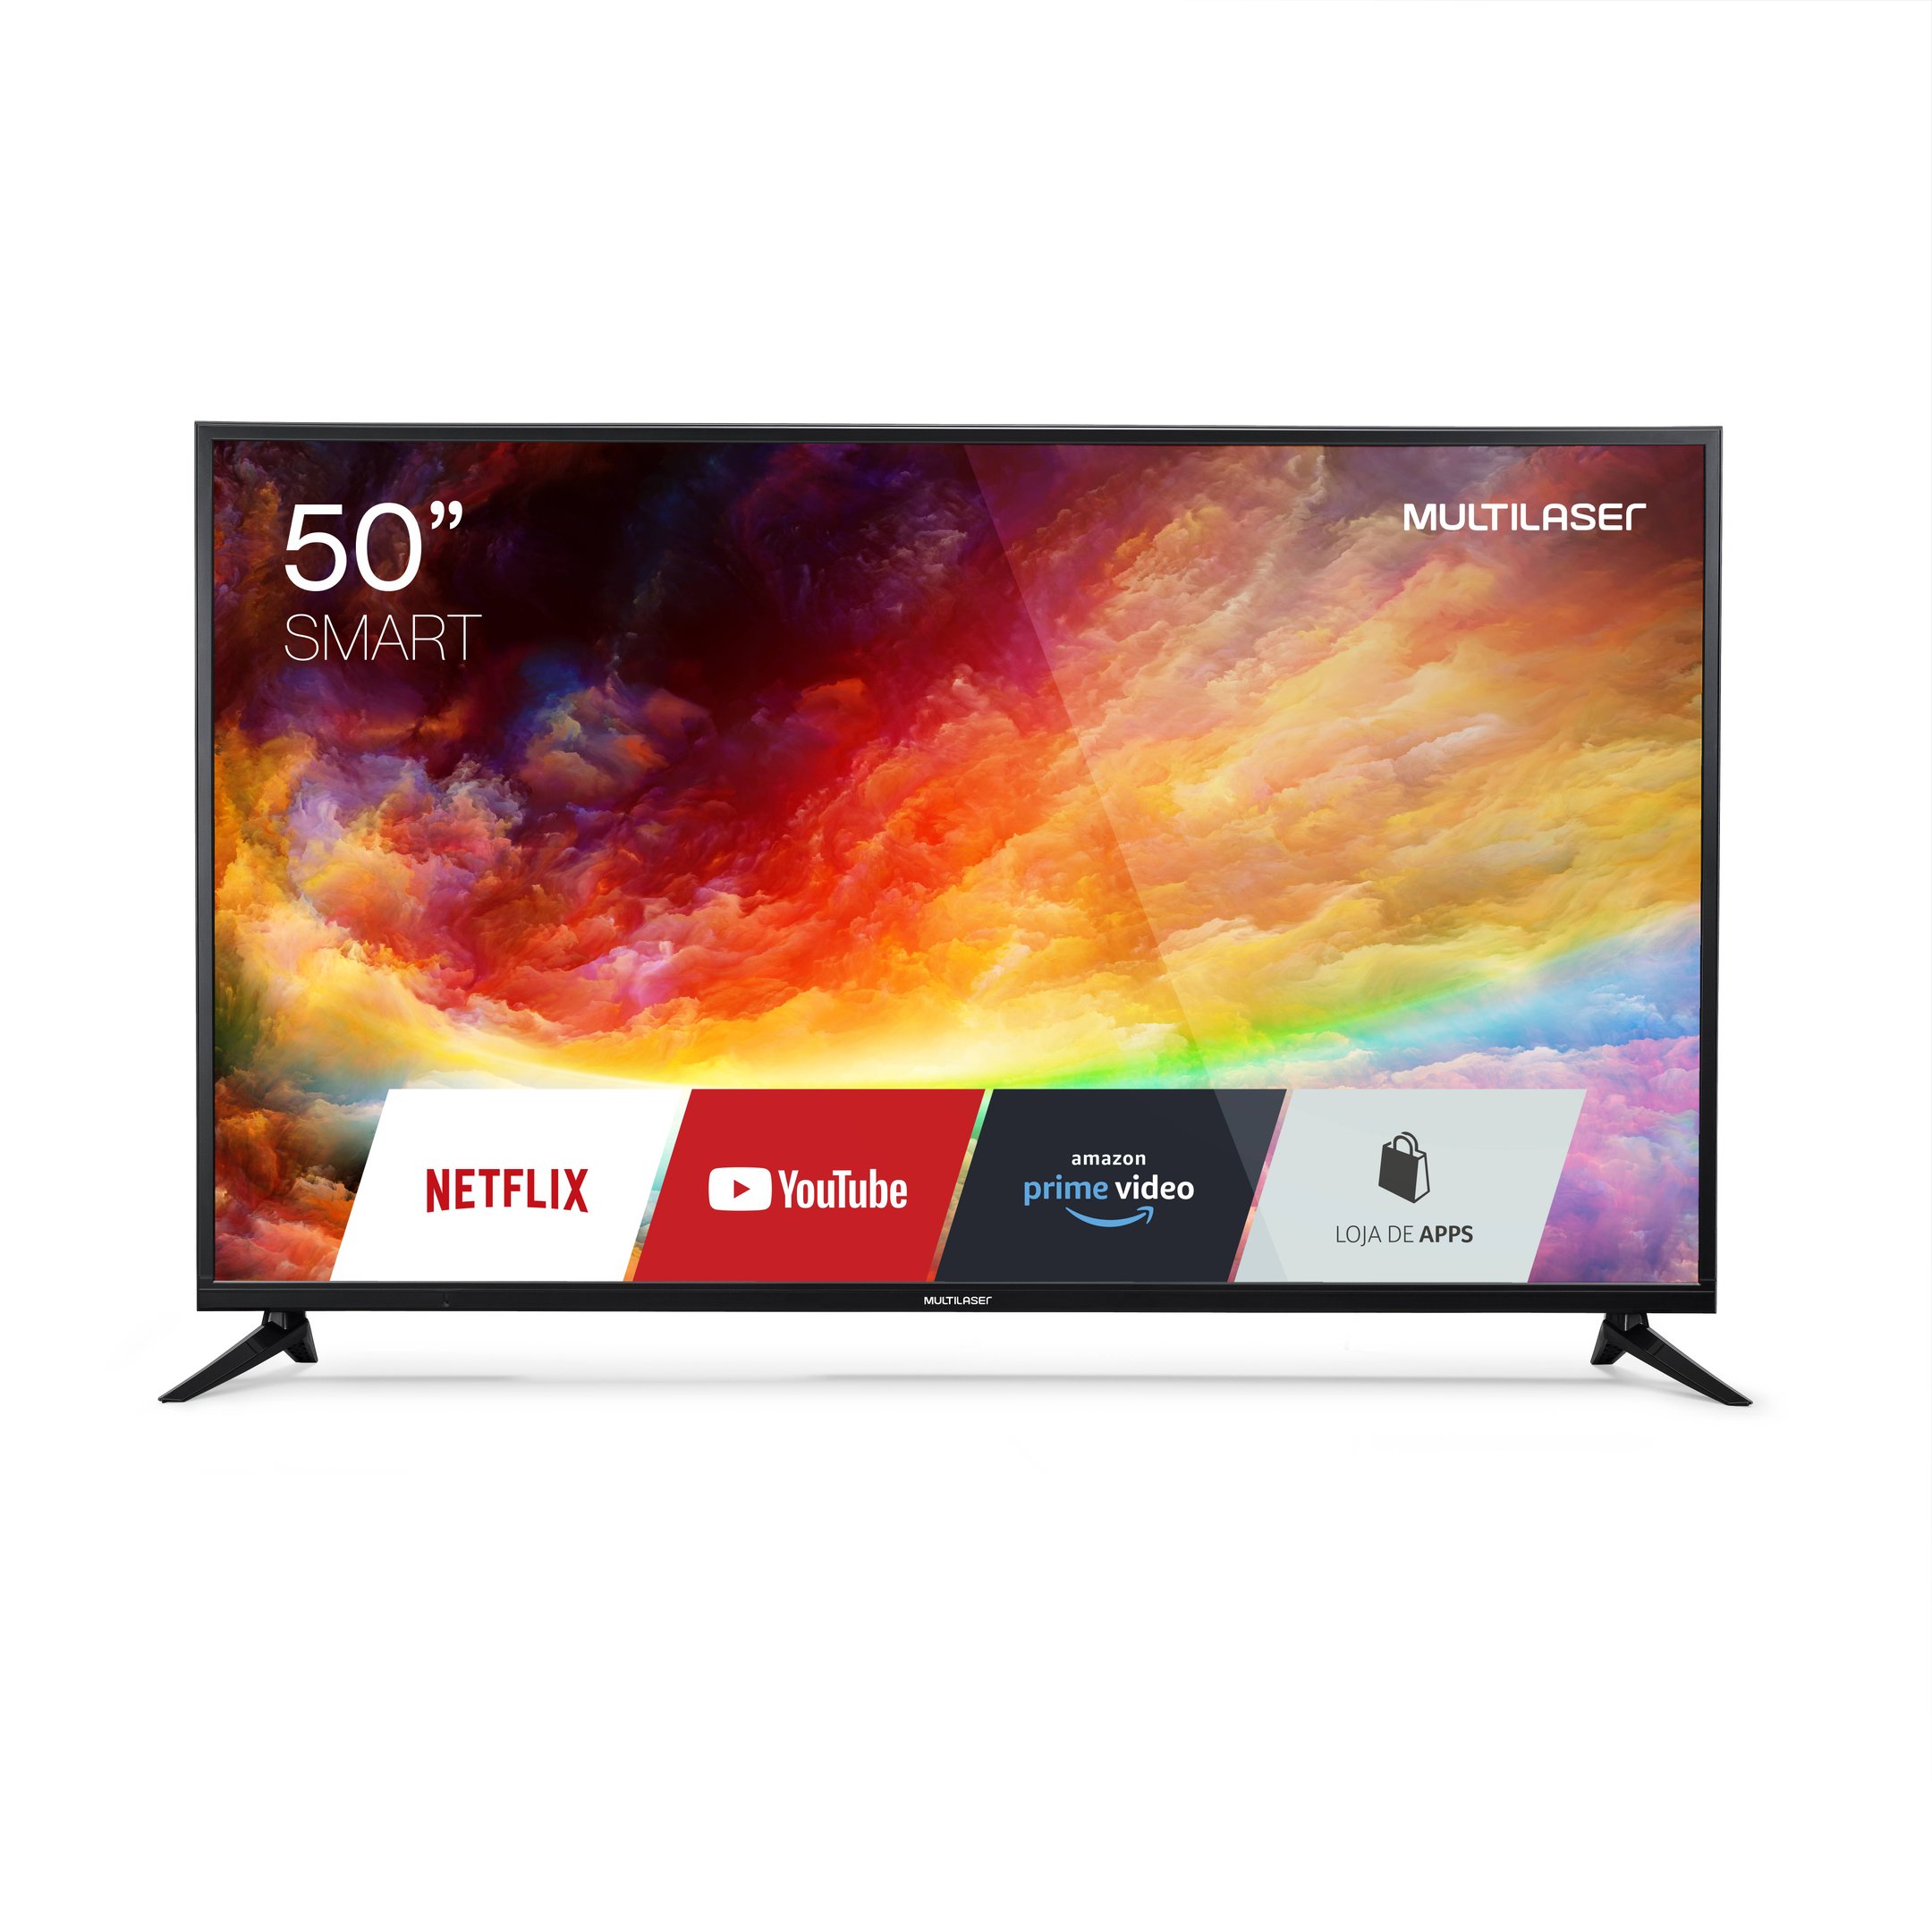 Primeira smart TV 4K da Multilaser chega ao mercado.